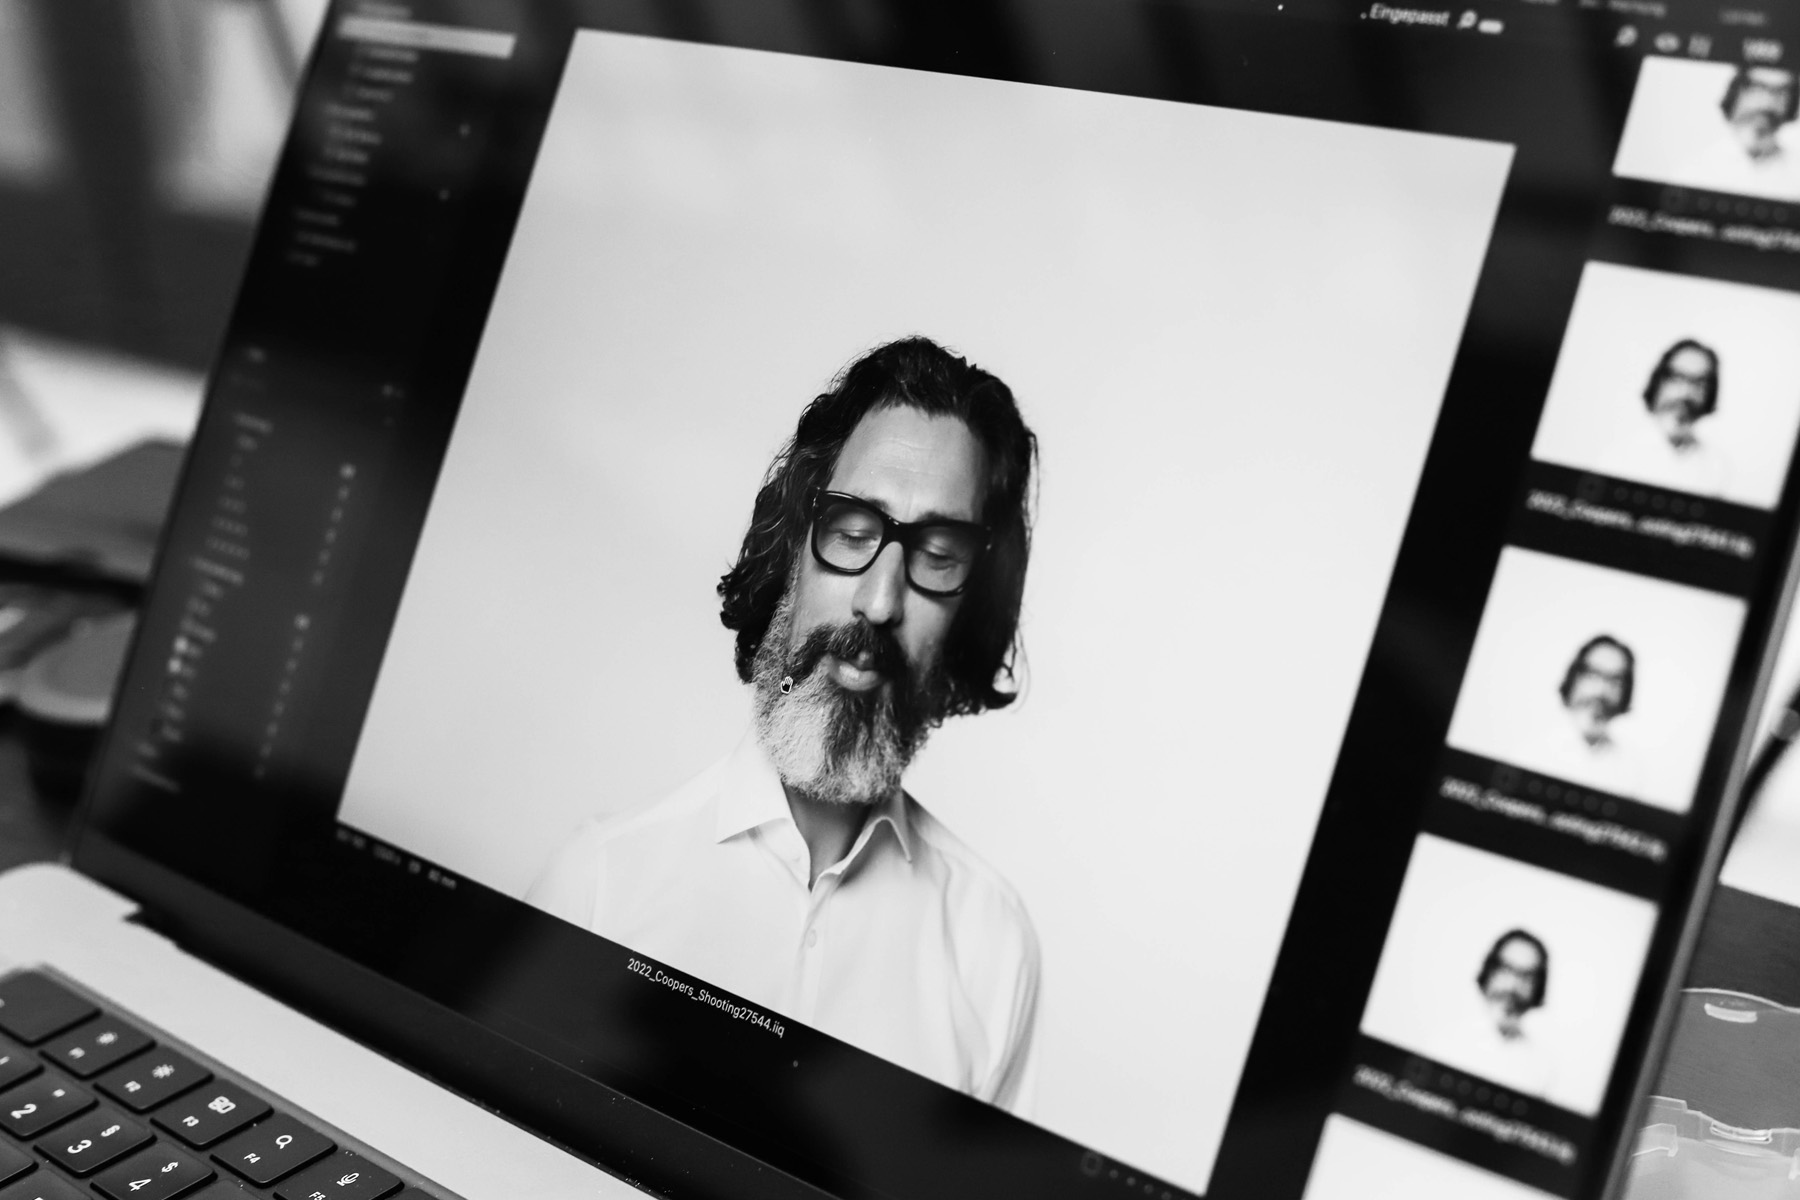 Screen mit Bildvorschau der Bilder eines Mannes mit mittellangen dunklen Haaren, grauem Bart und Brille vor weißer Leinwand